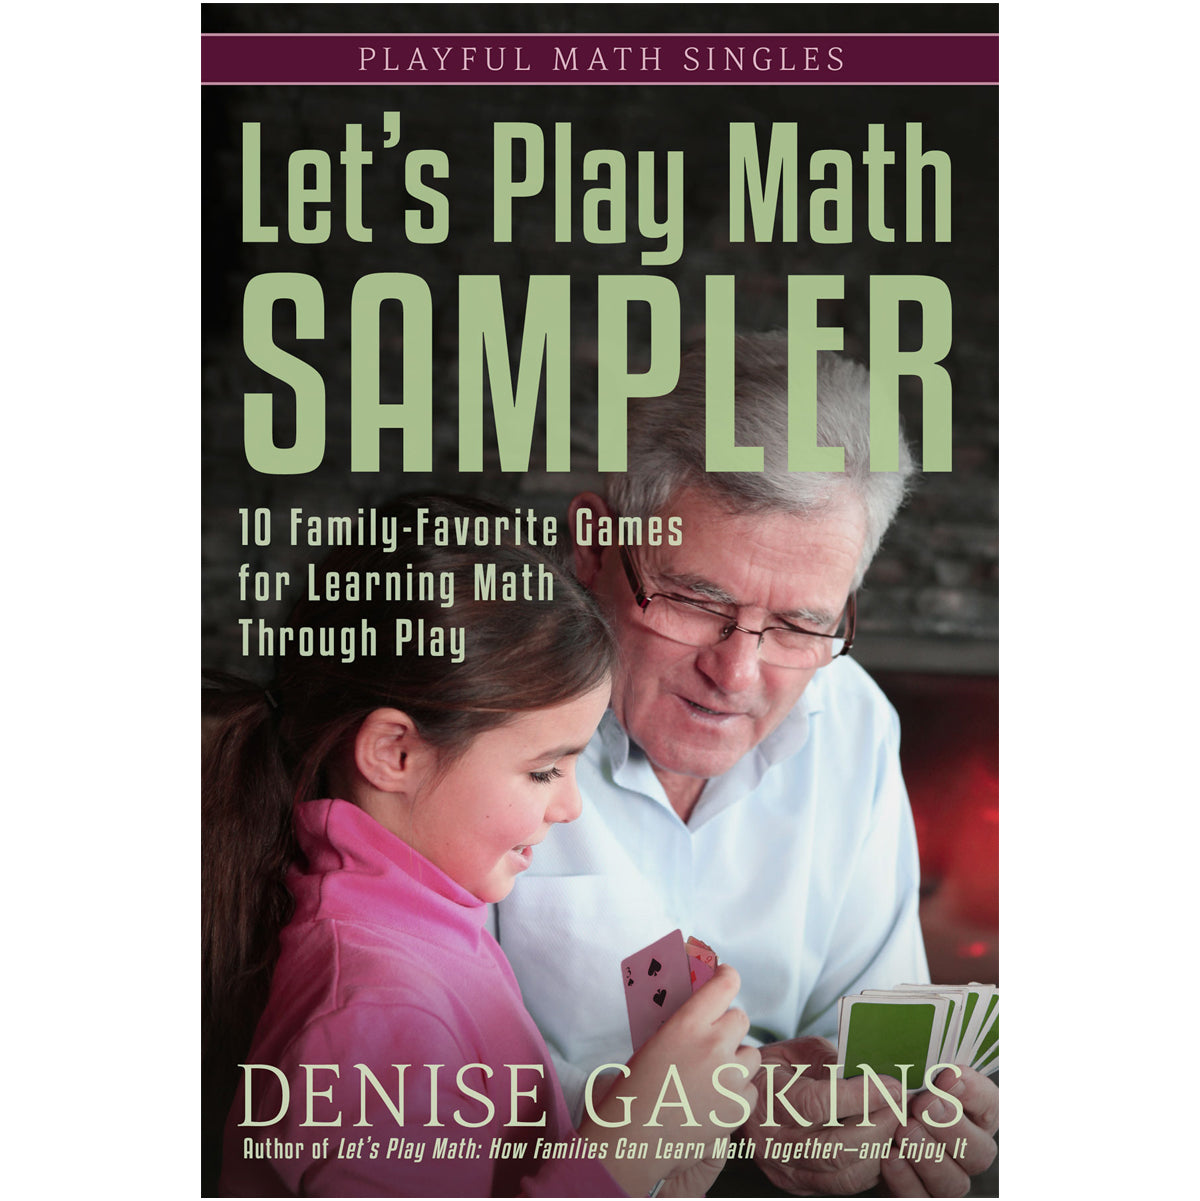 Let's Play Math Sampler paperback by Denise Gaskins